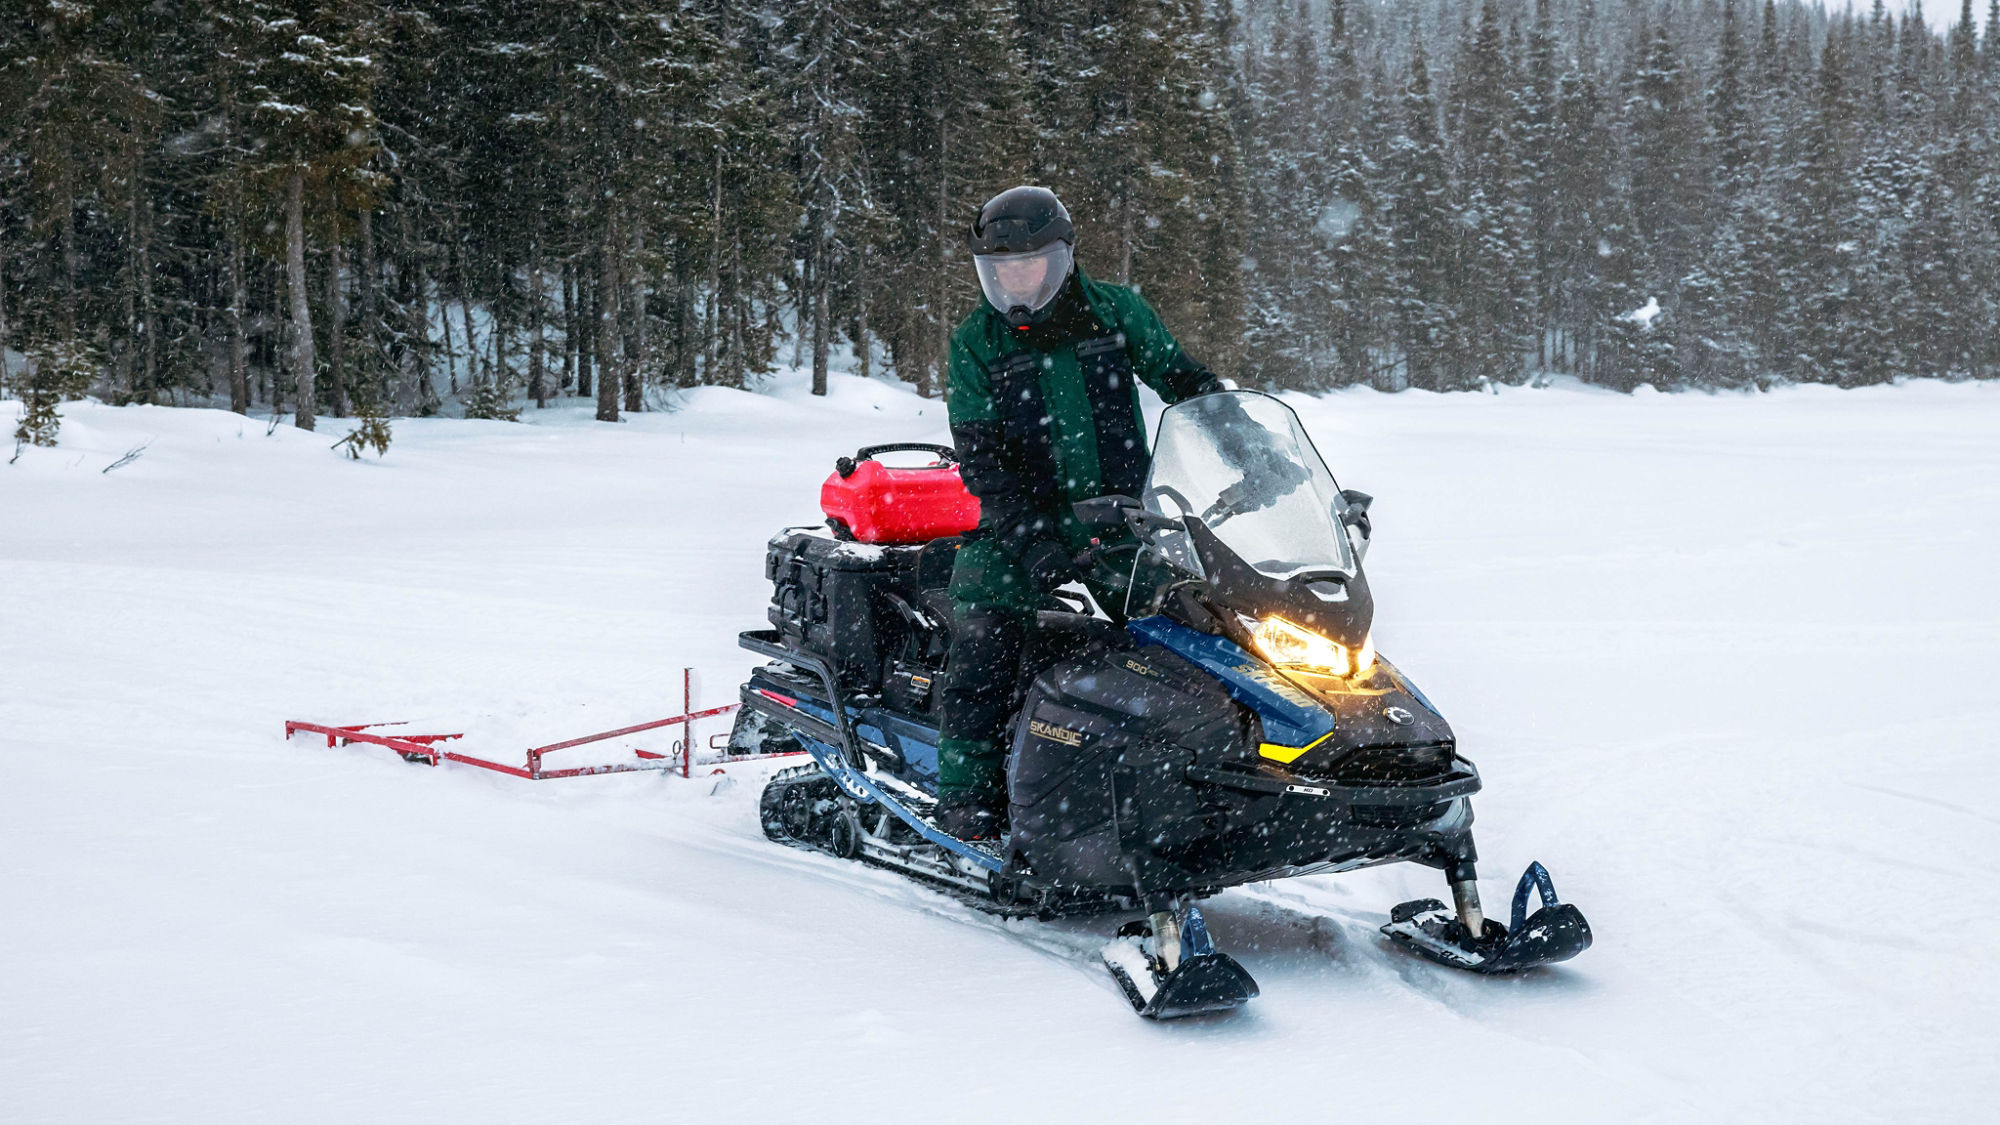 2025 Ski-Doo Skandic Utility Snowmobile pulling a sled